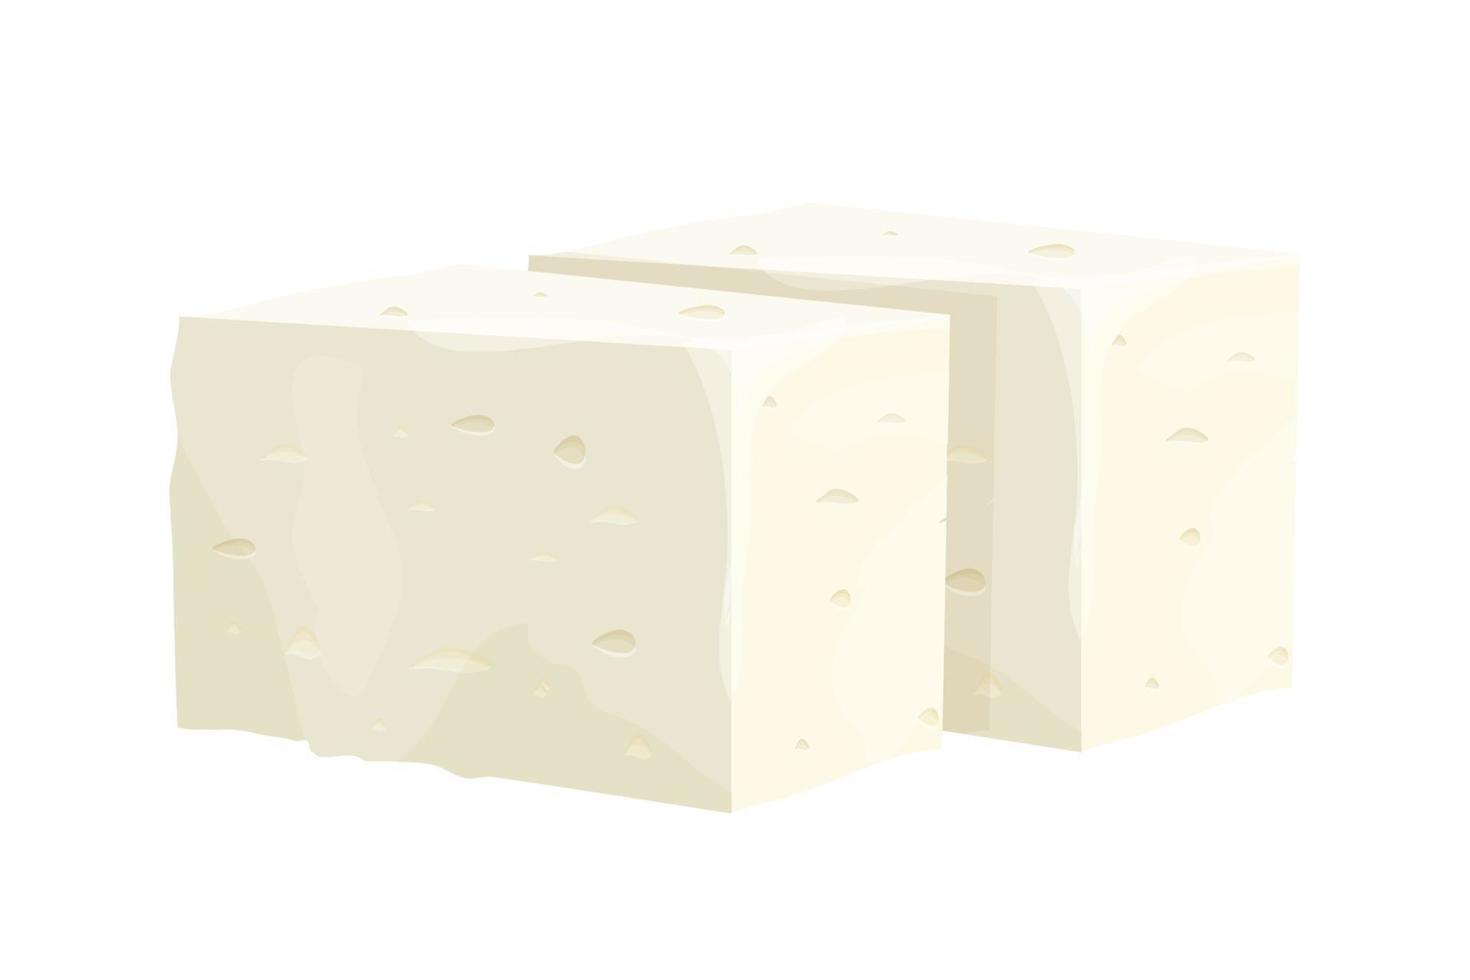 pieza de queso feta en estilo de dibujos animados ingrediente detallado aislado sobre fondo blanco. Queso blanco de cuajada griega elaborado con leche de oveja o leche de habas. ilustración vectorial vector